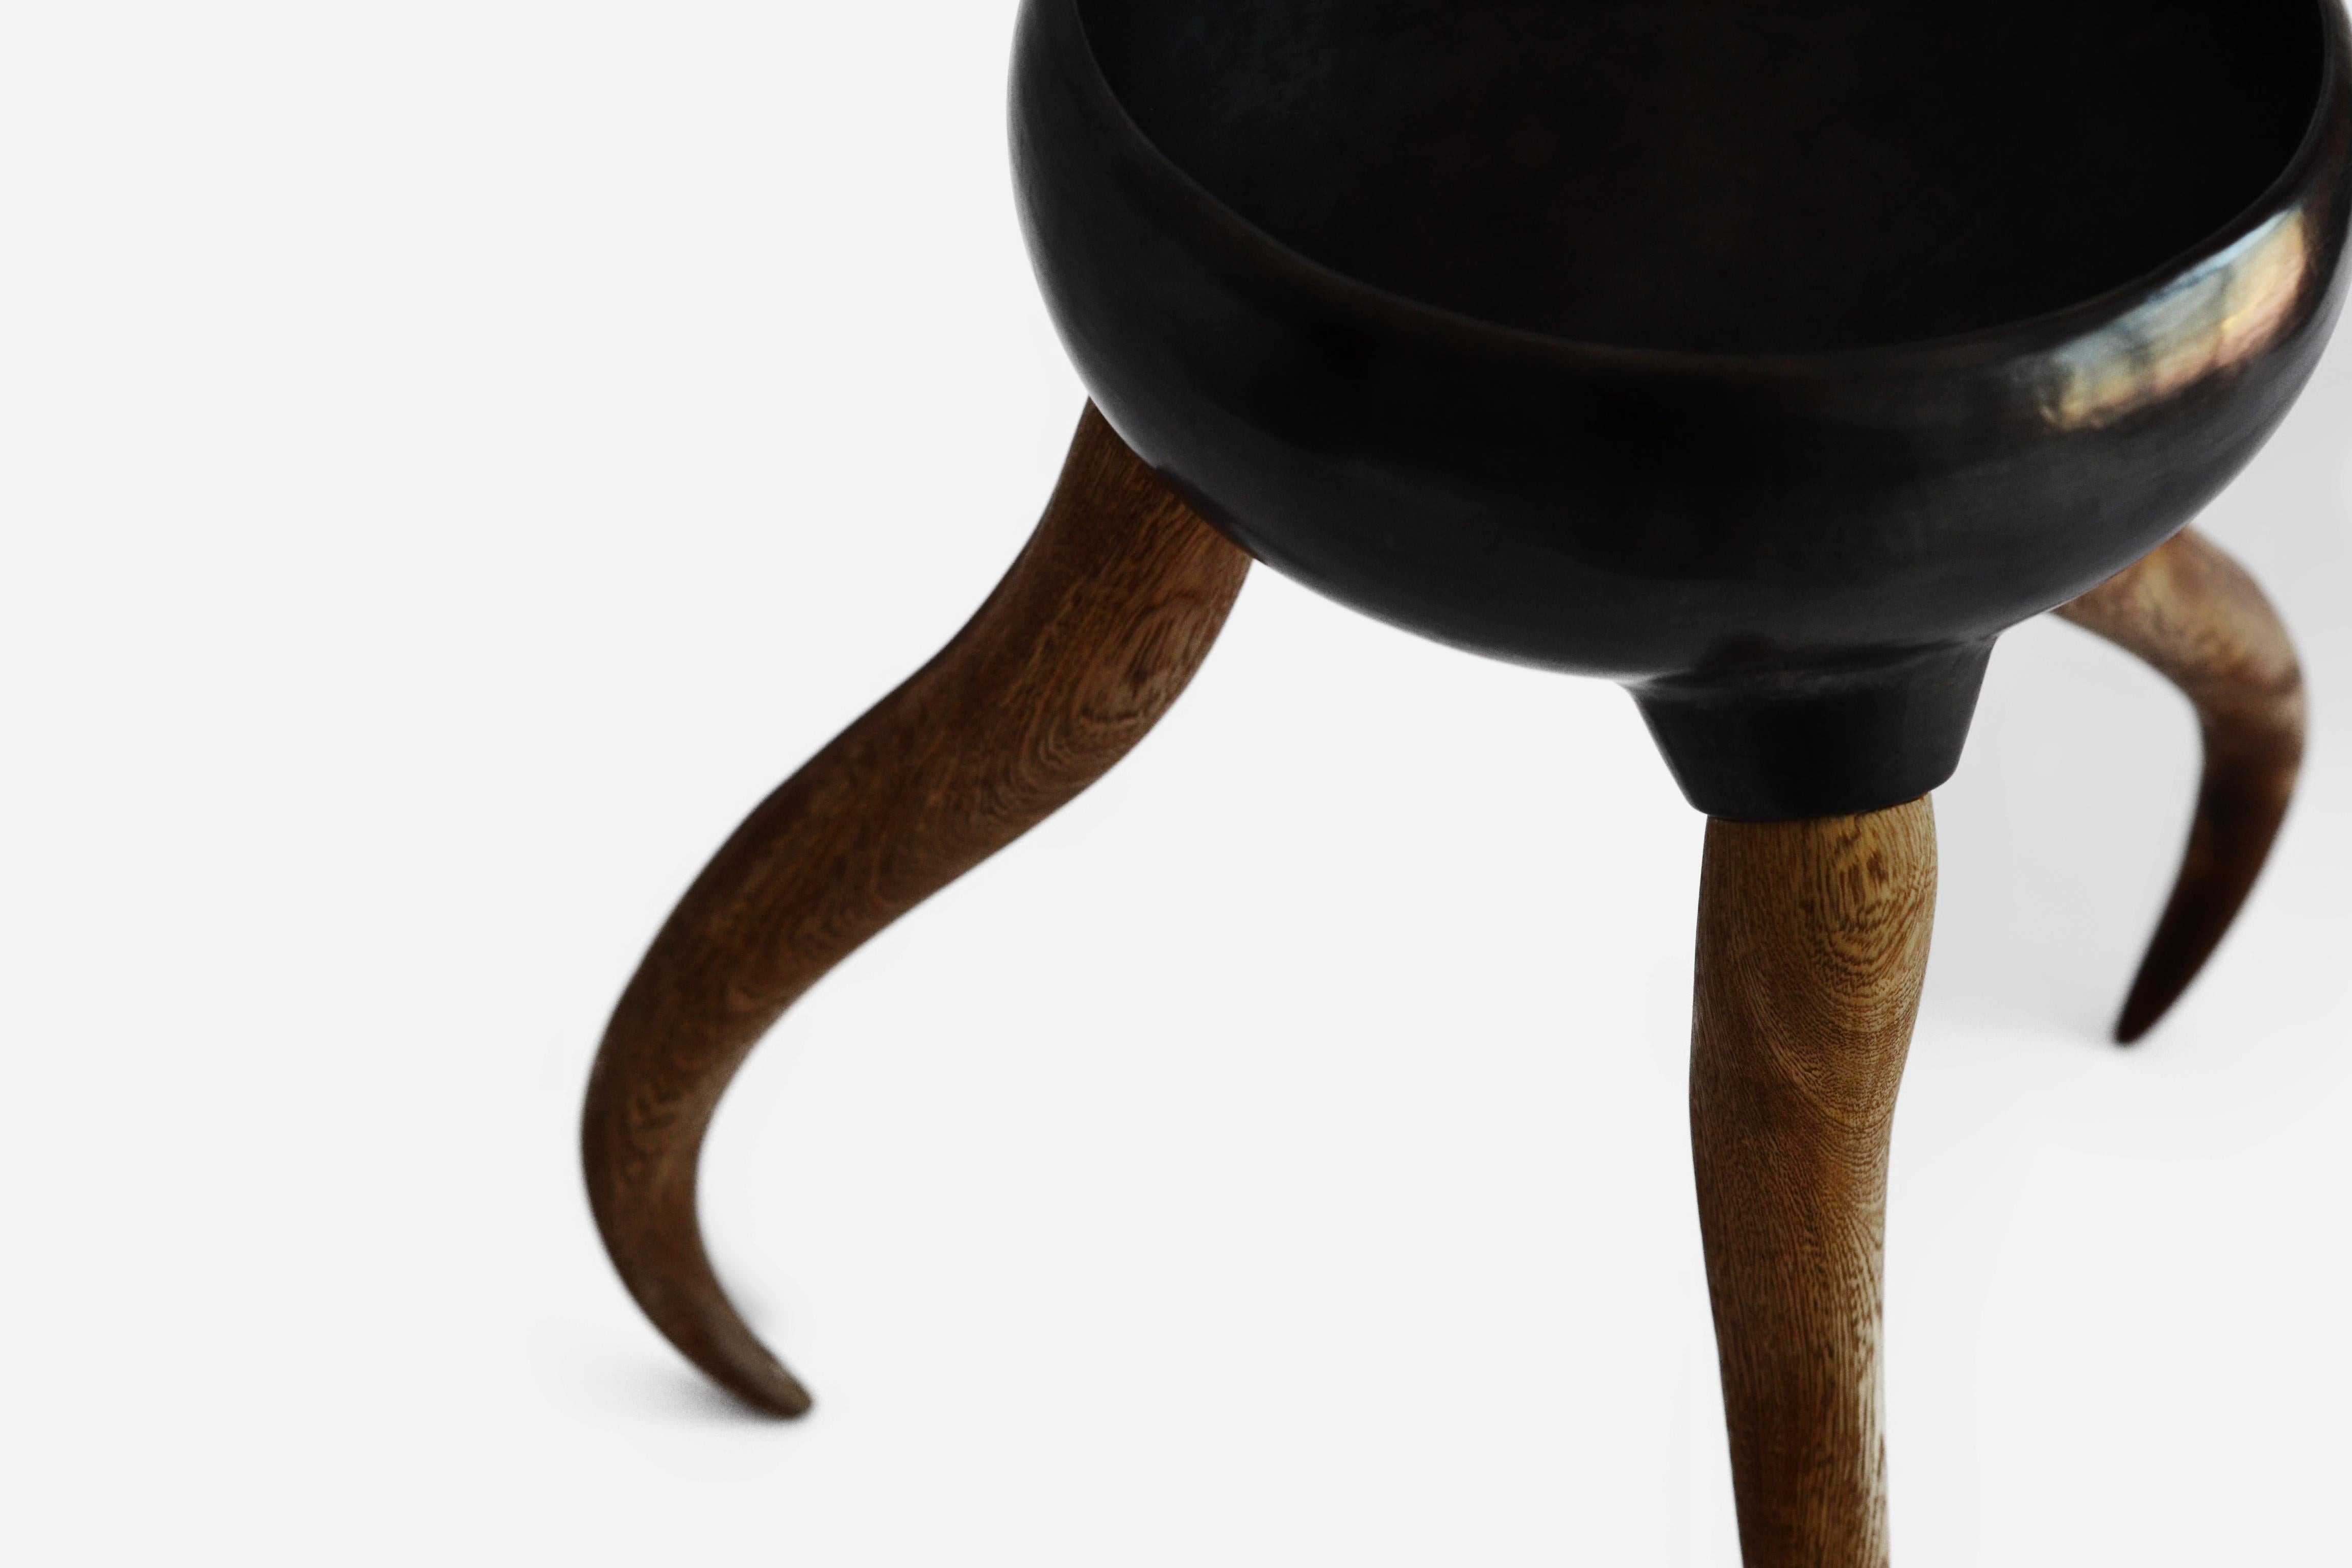 Eine Reihe von Gefäßen aus barro negro bruñido (brünierter schwarzer Ton) aus Oaxaca, mit Beinen aus Rosenholz, die von einem Tischlermeister in Tlaquepaque, Jalisco, geschnitzt wurden.

Das Konzept dieser Serie bezieht sich auf die Geschichte von